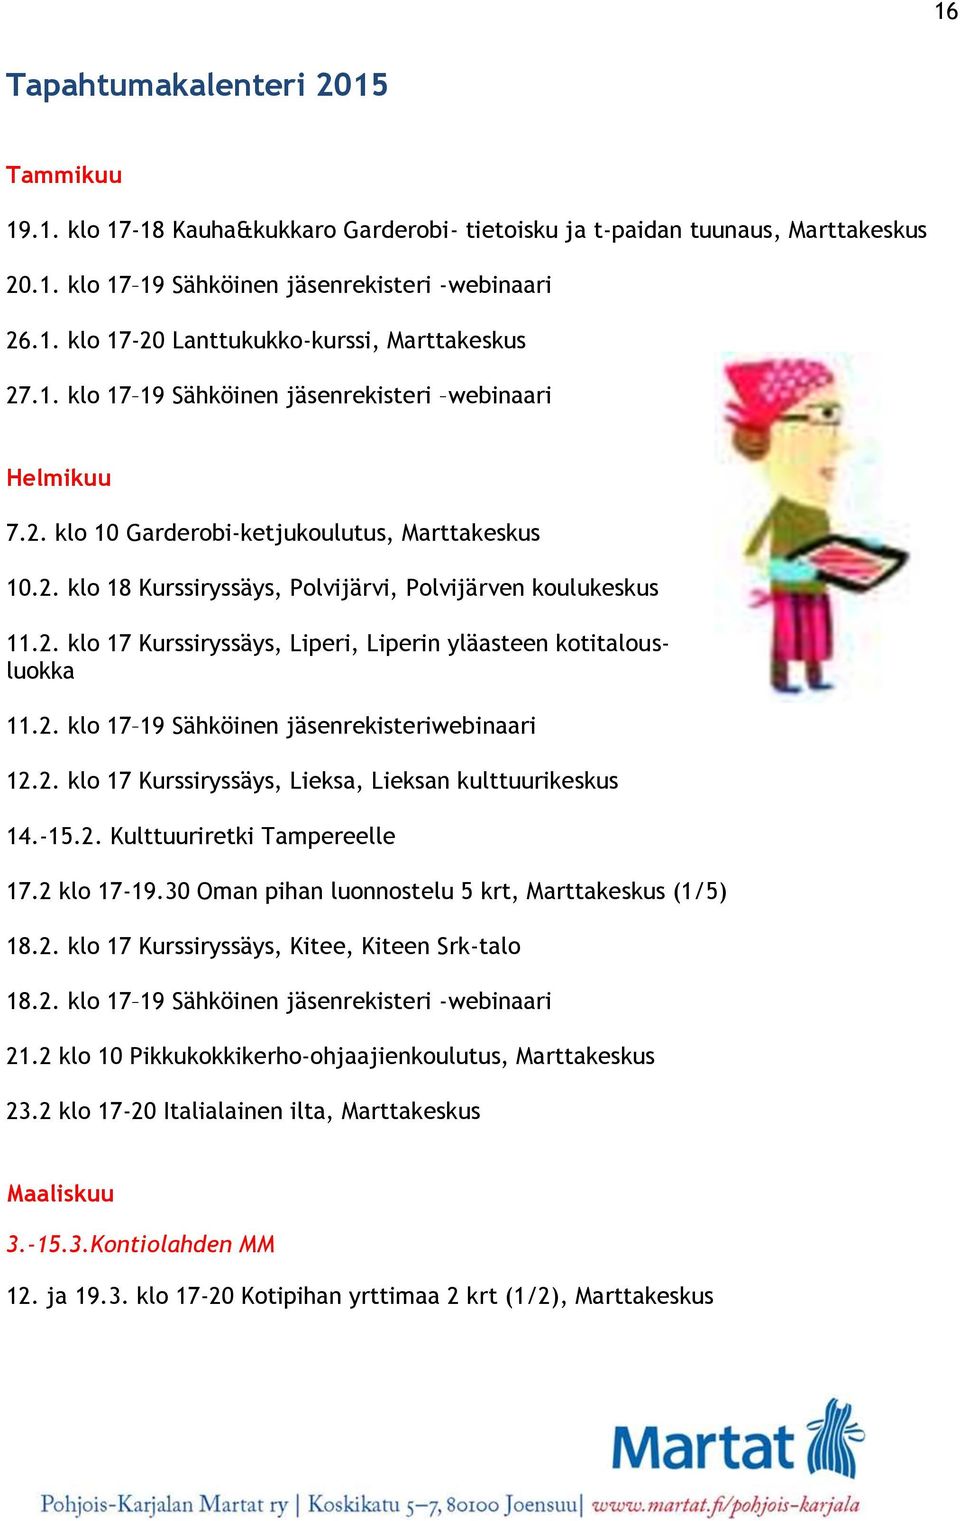 2. klo 17 19 Sähköinen jäsenrekisteriwebinaari 12.2. klo 17 Kurssiryssäys, Lieksa, Lieksan kulttuurikeskus 14.-15.2. Kulttuuriretki Tampereelle 17.2 klo 17-19.